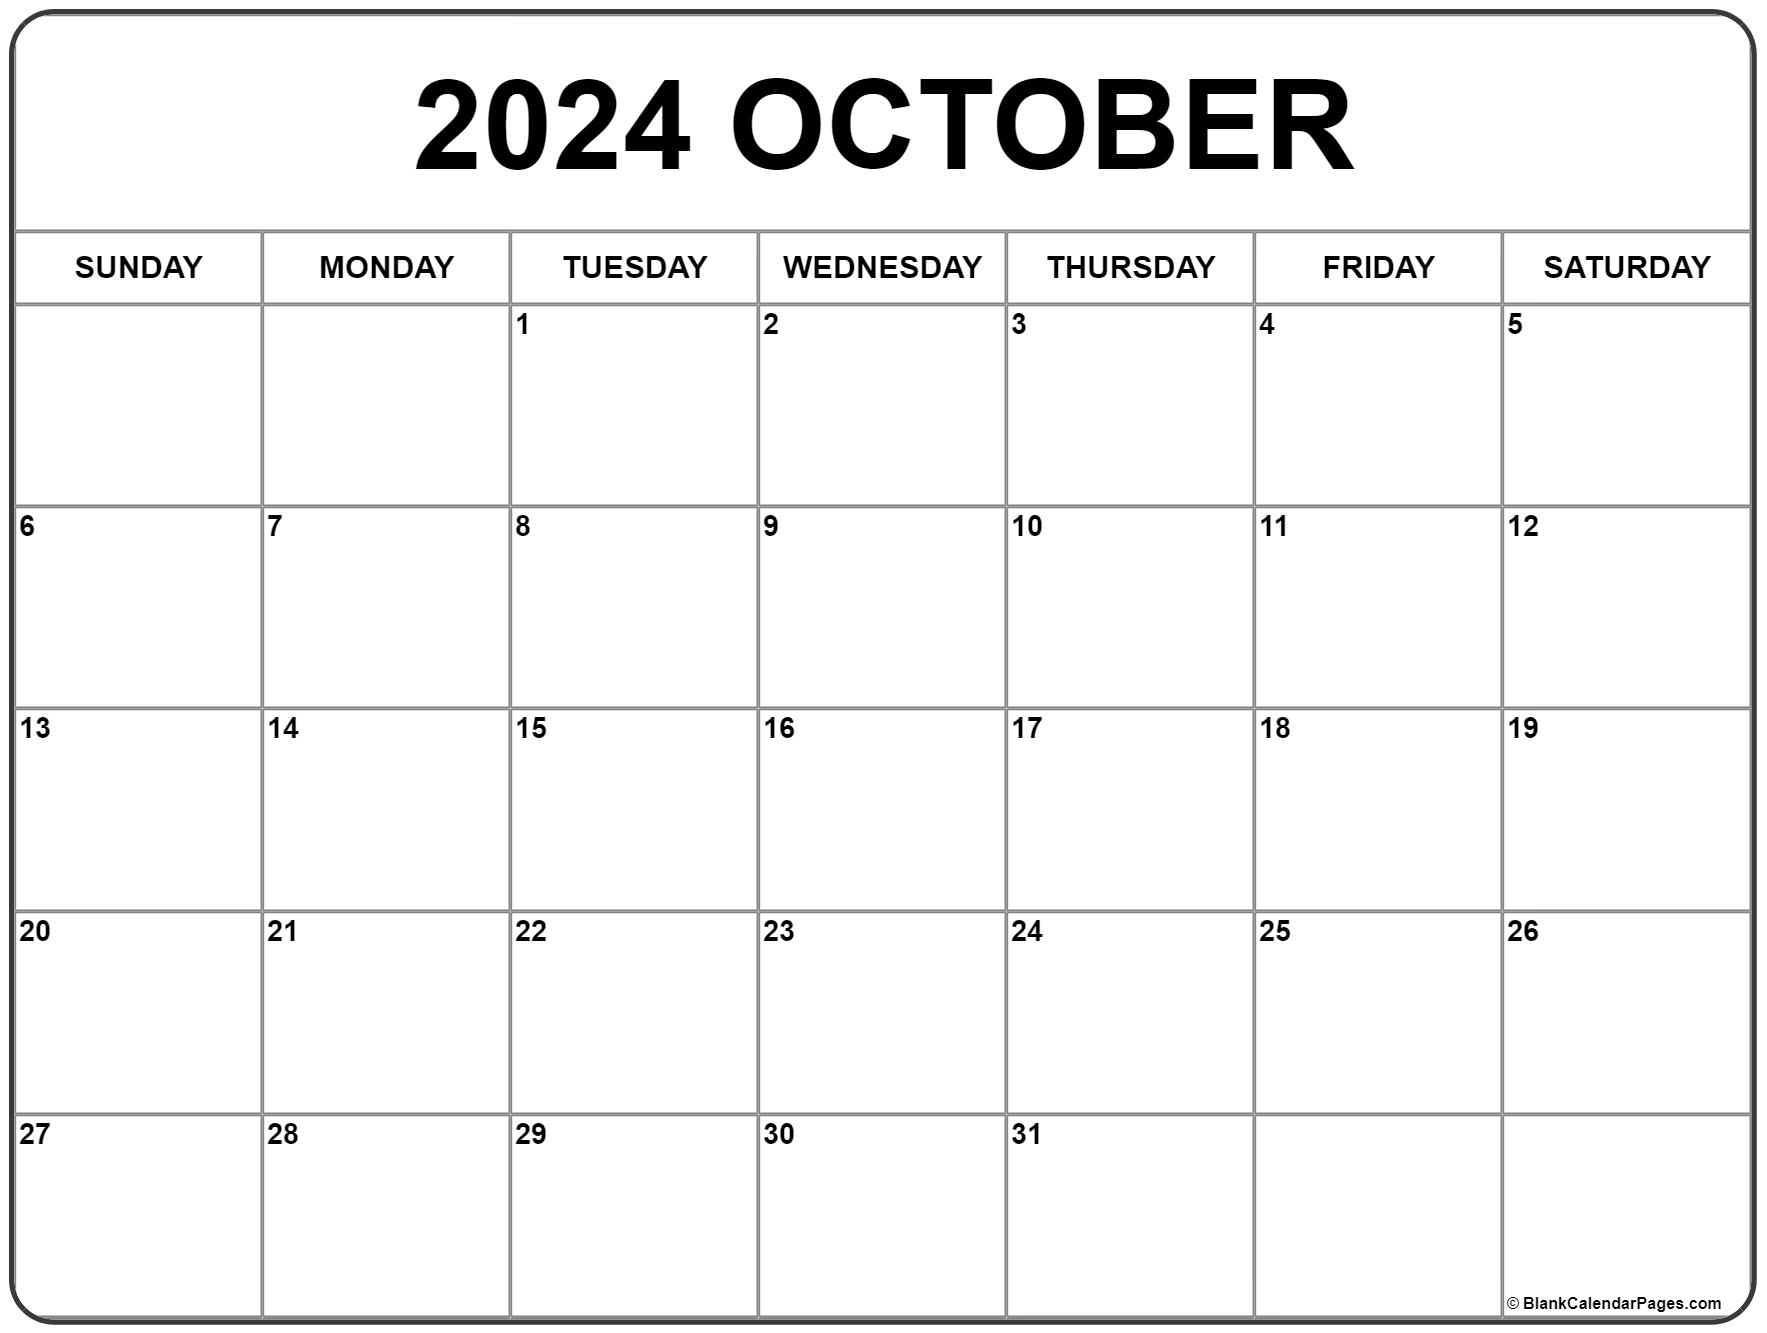 october-2020-calendar-free-printable-calendar